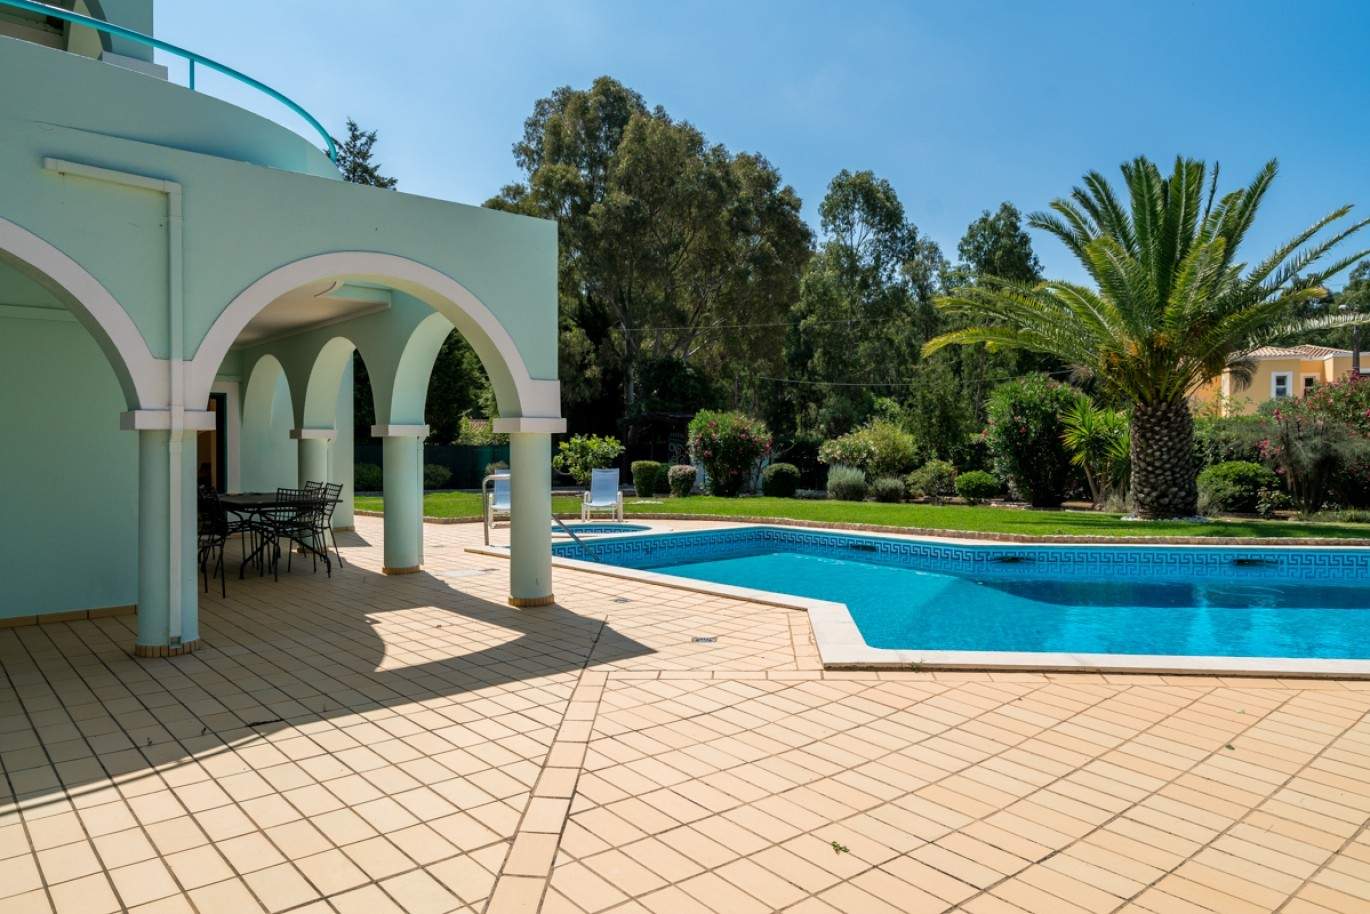 Verkauf Villa mit pool und Garten in Penina Alvor, Algarve, Portugal_83412